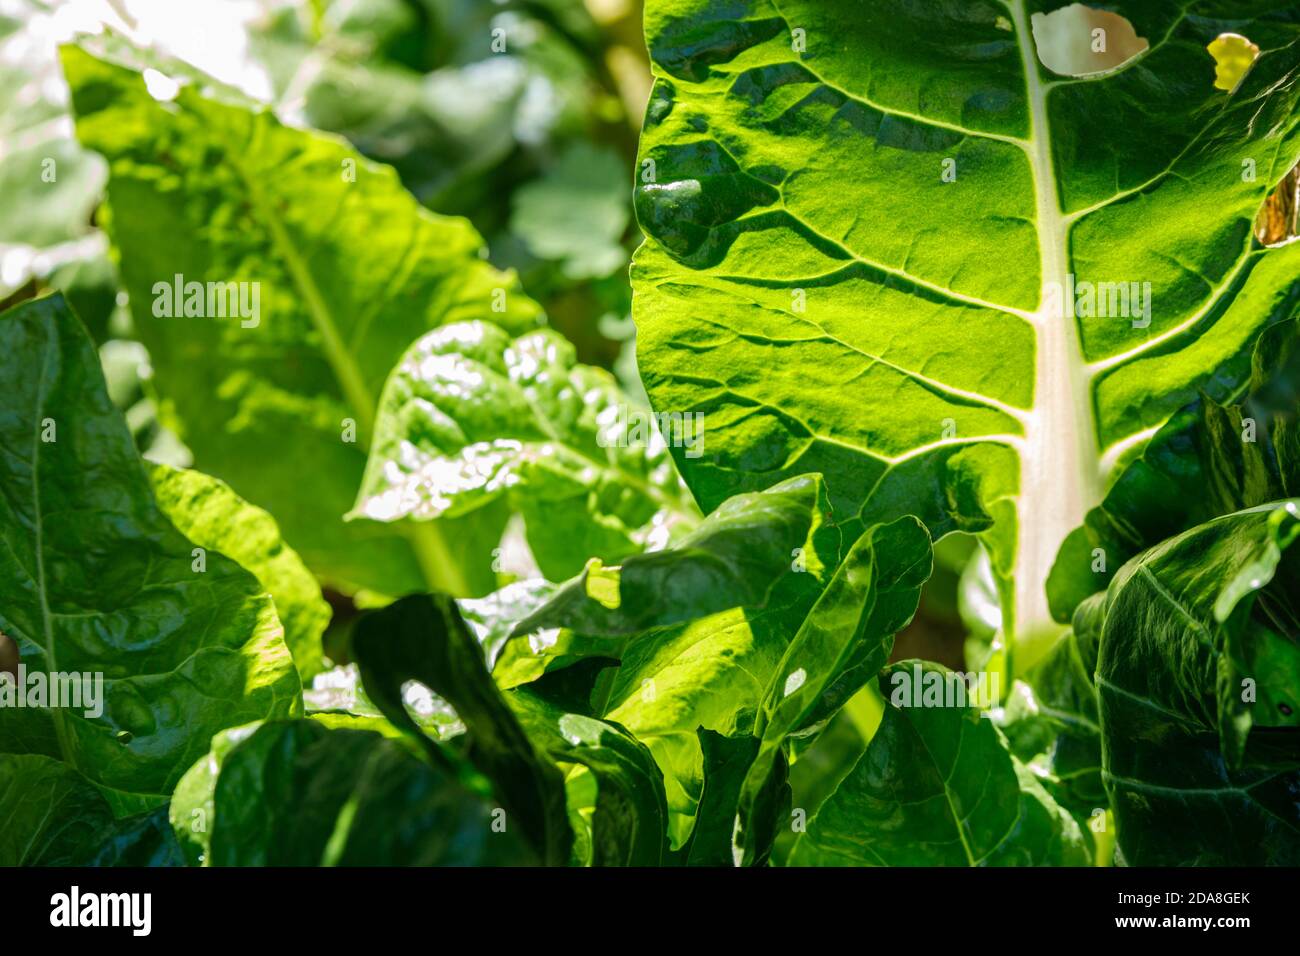 Rhubarbe verte fraîche en plein soleil dans un jardin, texture d'arrière-plan rapprochée pour de nouvelles idées de recettes avec rhubarbe Banque D'Images